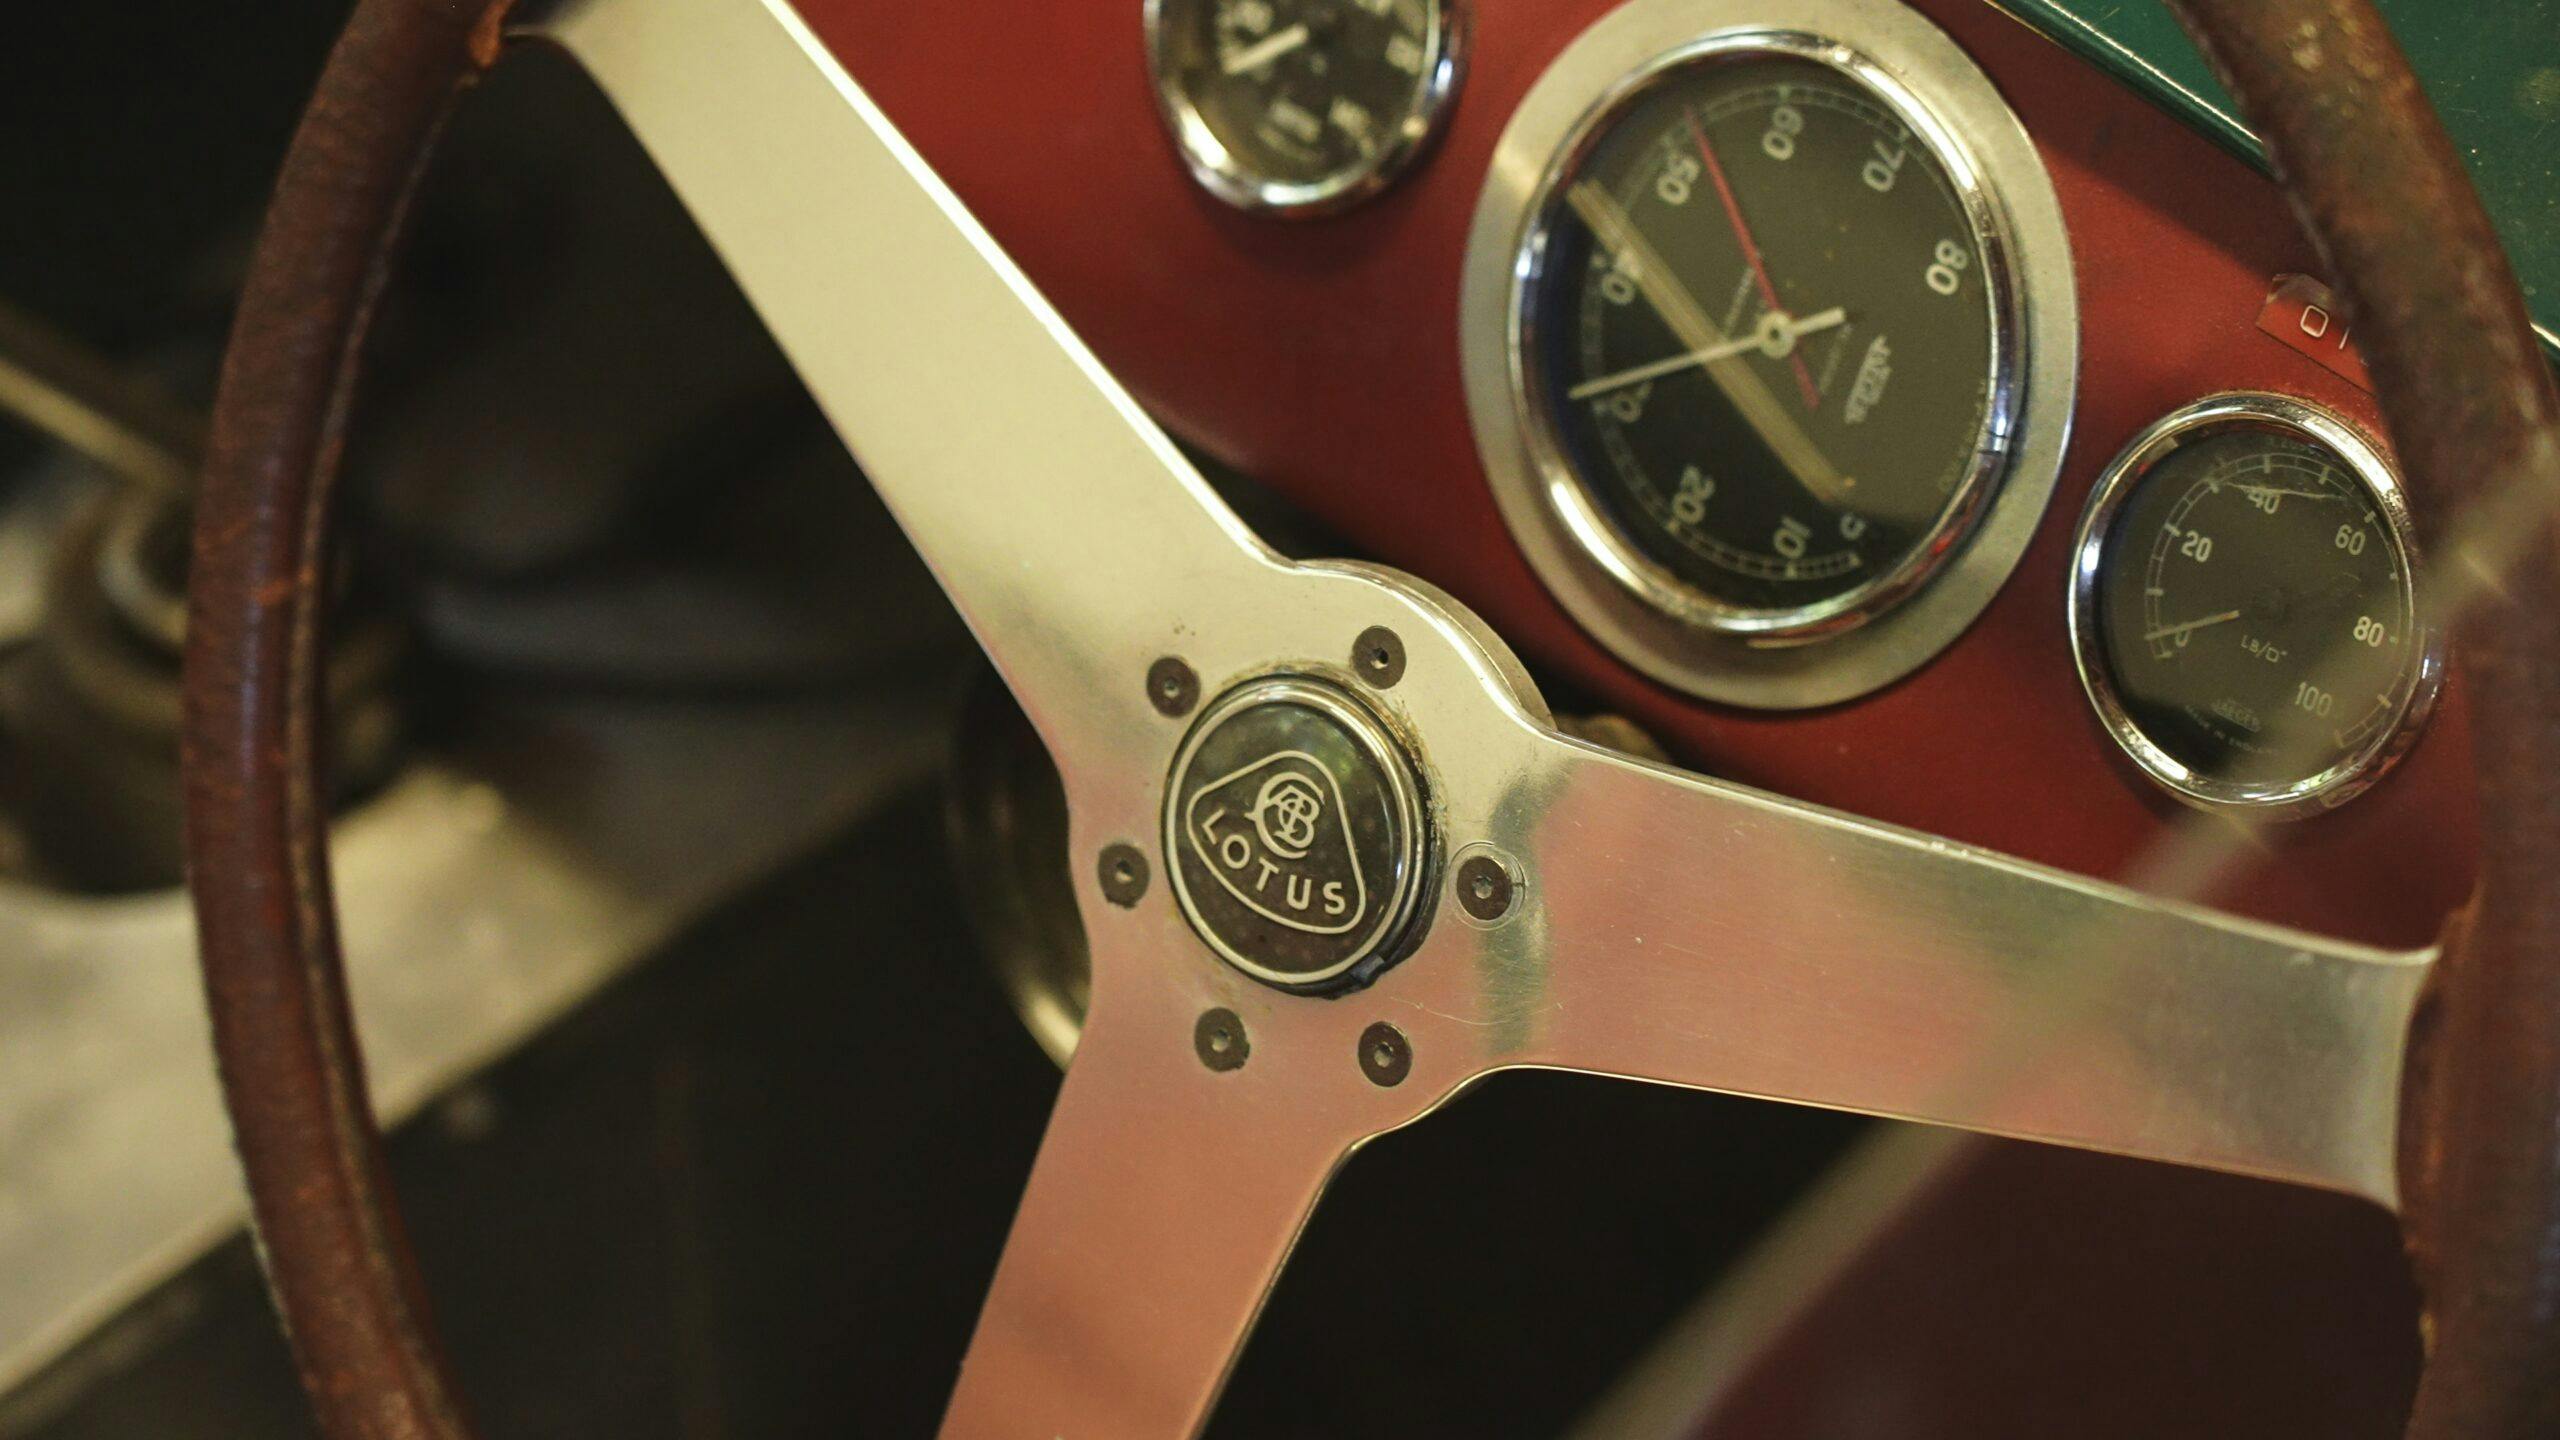 McKay Lotus Eleven steering wheel detail